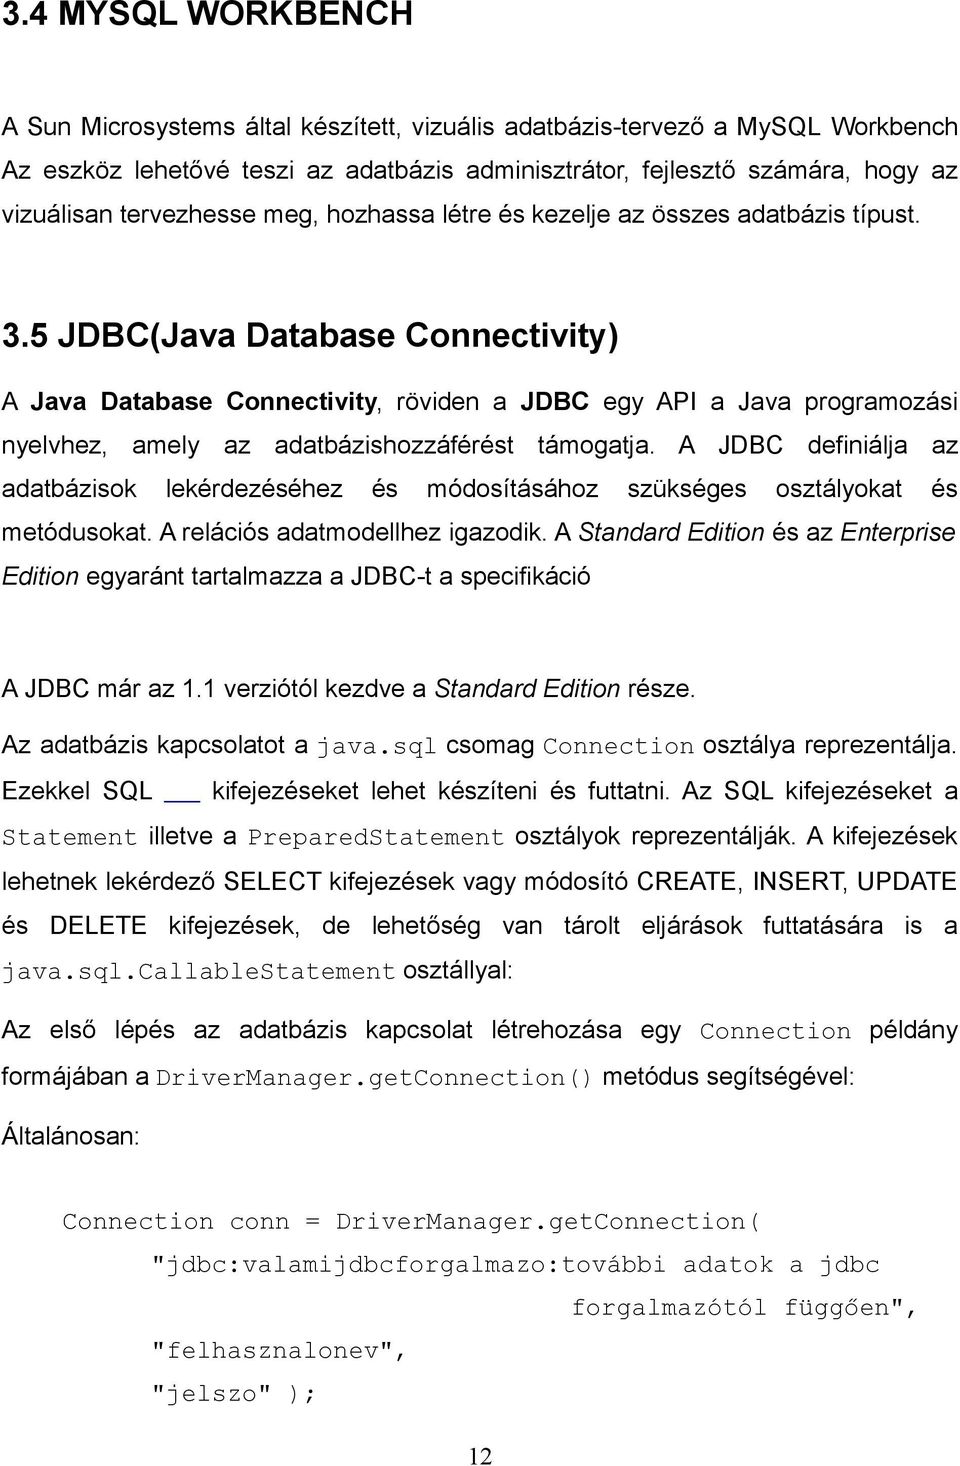 5 JDBC(Java Database Connectivity) A Java Database Connectivity, röviden a JDBC egy API a Java programozási nyelvhez, amely az adatbázishozzáférést támogatja.